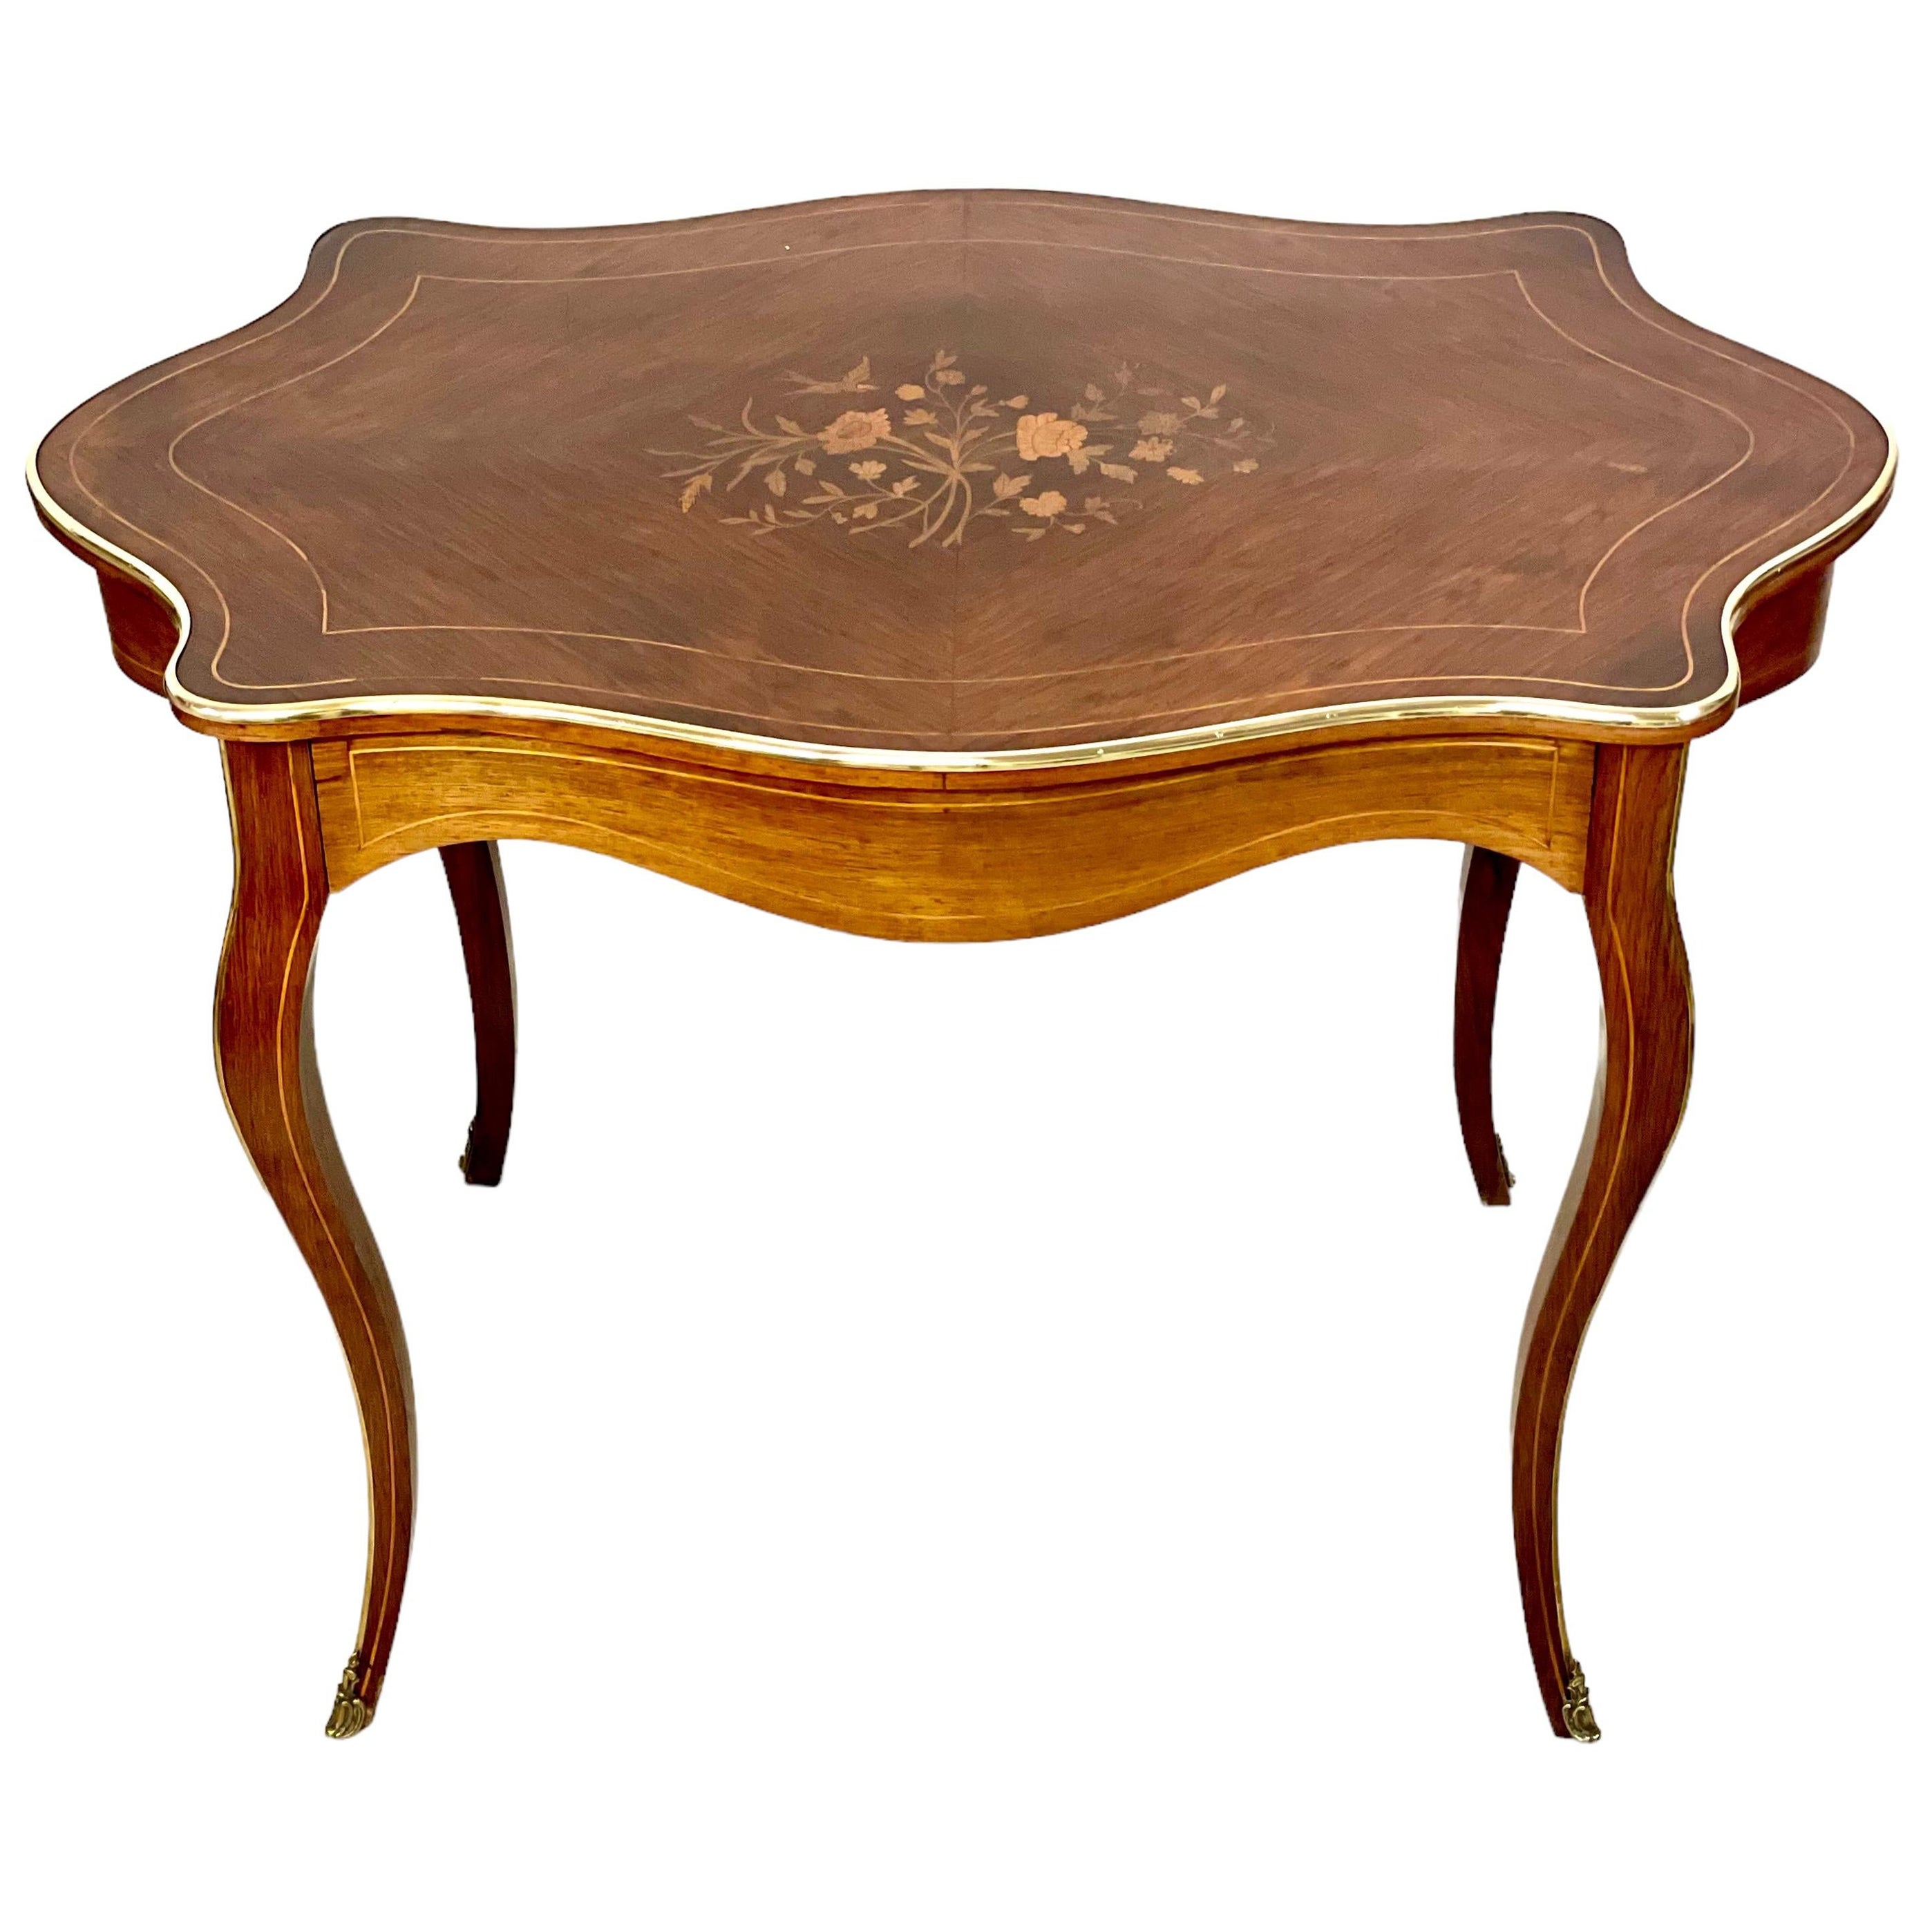 19. Jahrhundert Louis XV Stil Schreibtisch oder Center Table